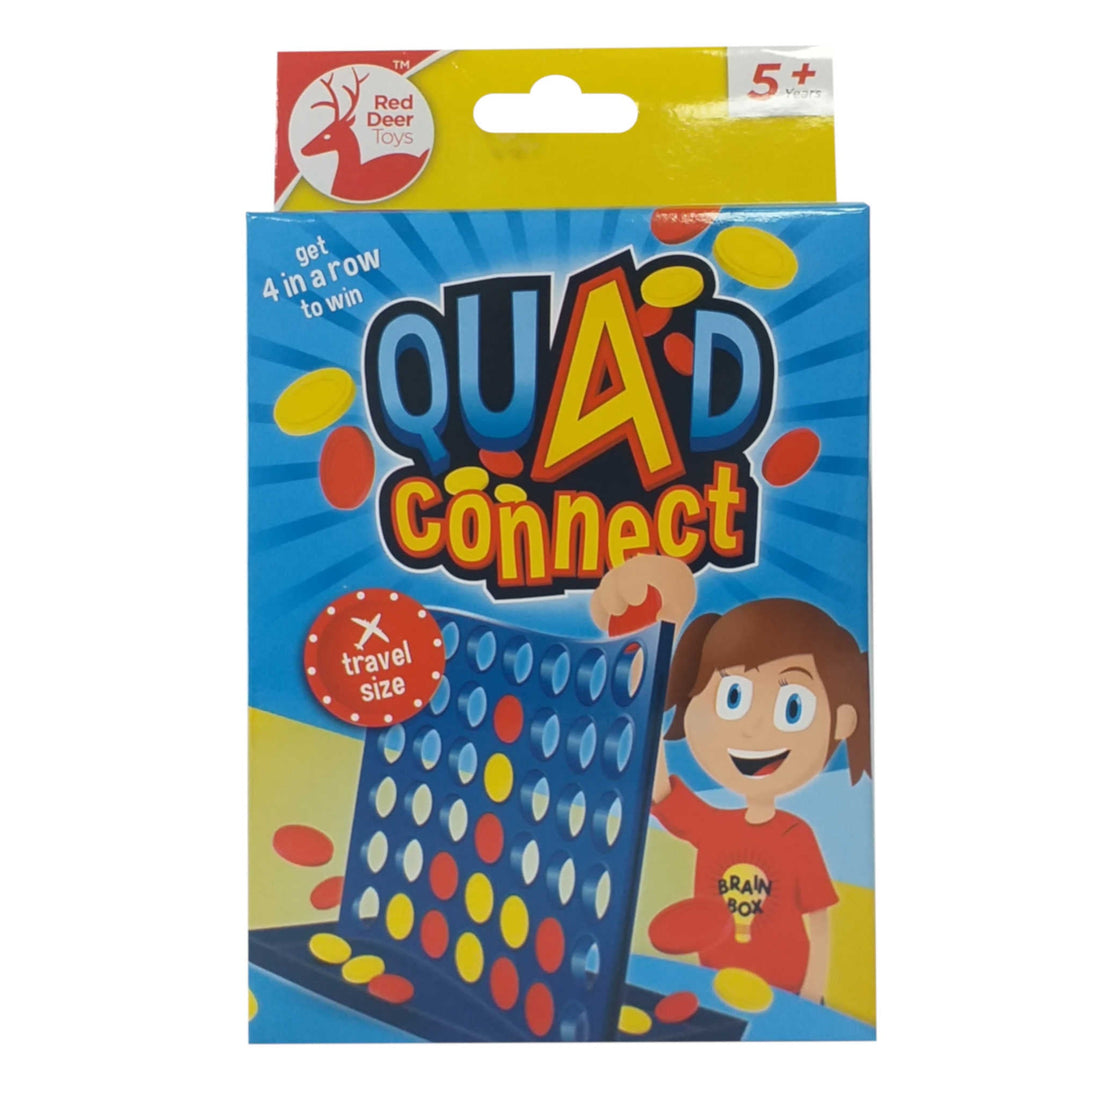 Quad Connect